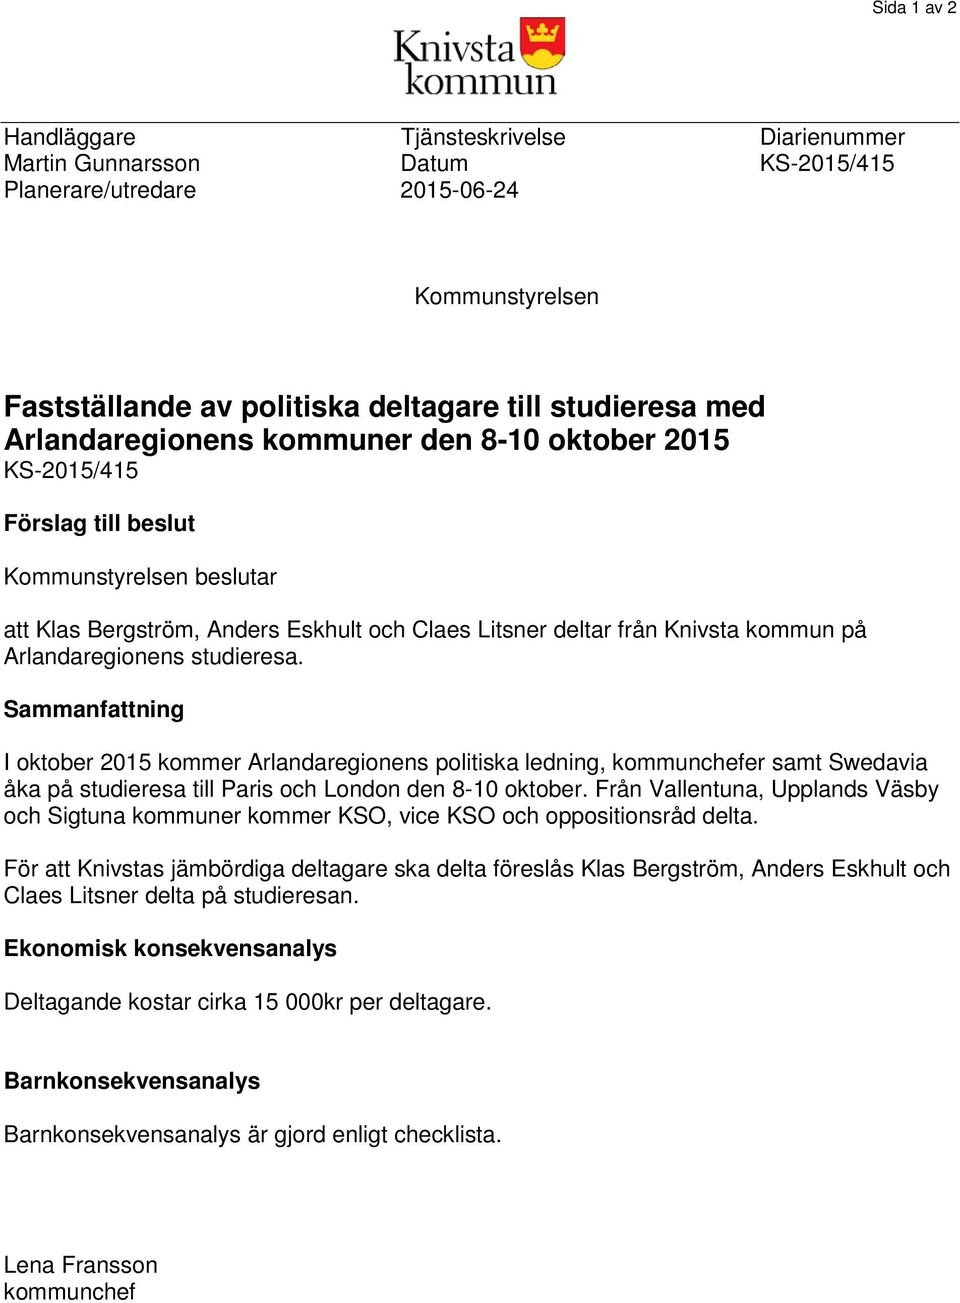 Arlandaregionens studieresa. Sammanfattning I oktober 2015 kommer Arlandaregionens politiska ledning, kommunchefer samt Swedavia åka på studieresa till Paris och London den 8-10 oktober.